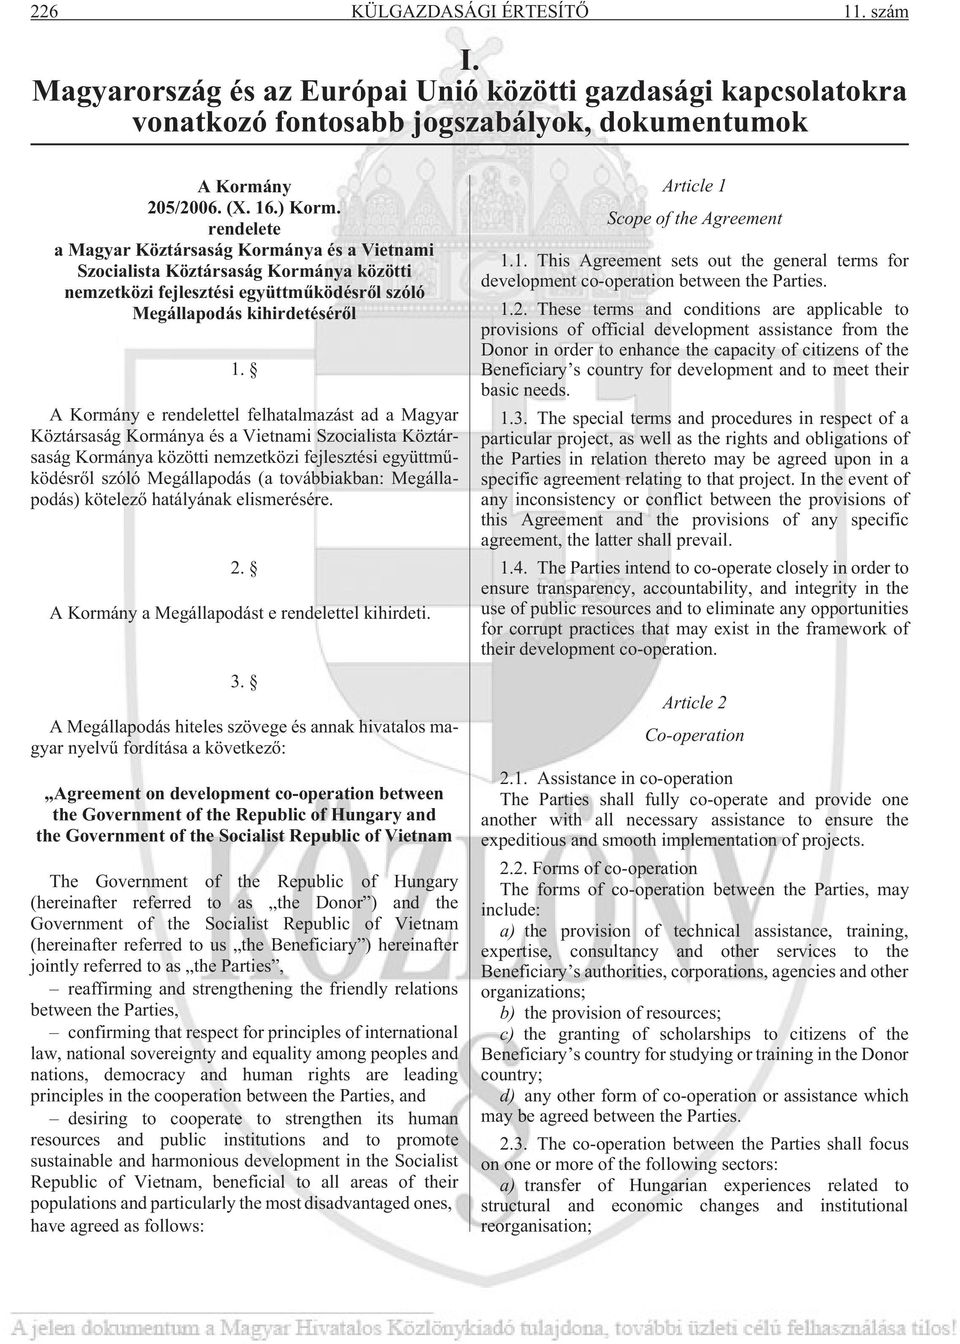 A Kormány e rendelettel felhatalmazást ad a Magyar Köztársaság Kormánya és a Vietnami Szocialista Köztársaság Kormánya közötti nemzetközi fejlesztési együttmûködésrõl szóló Megállapodás (a